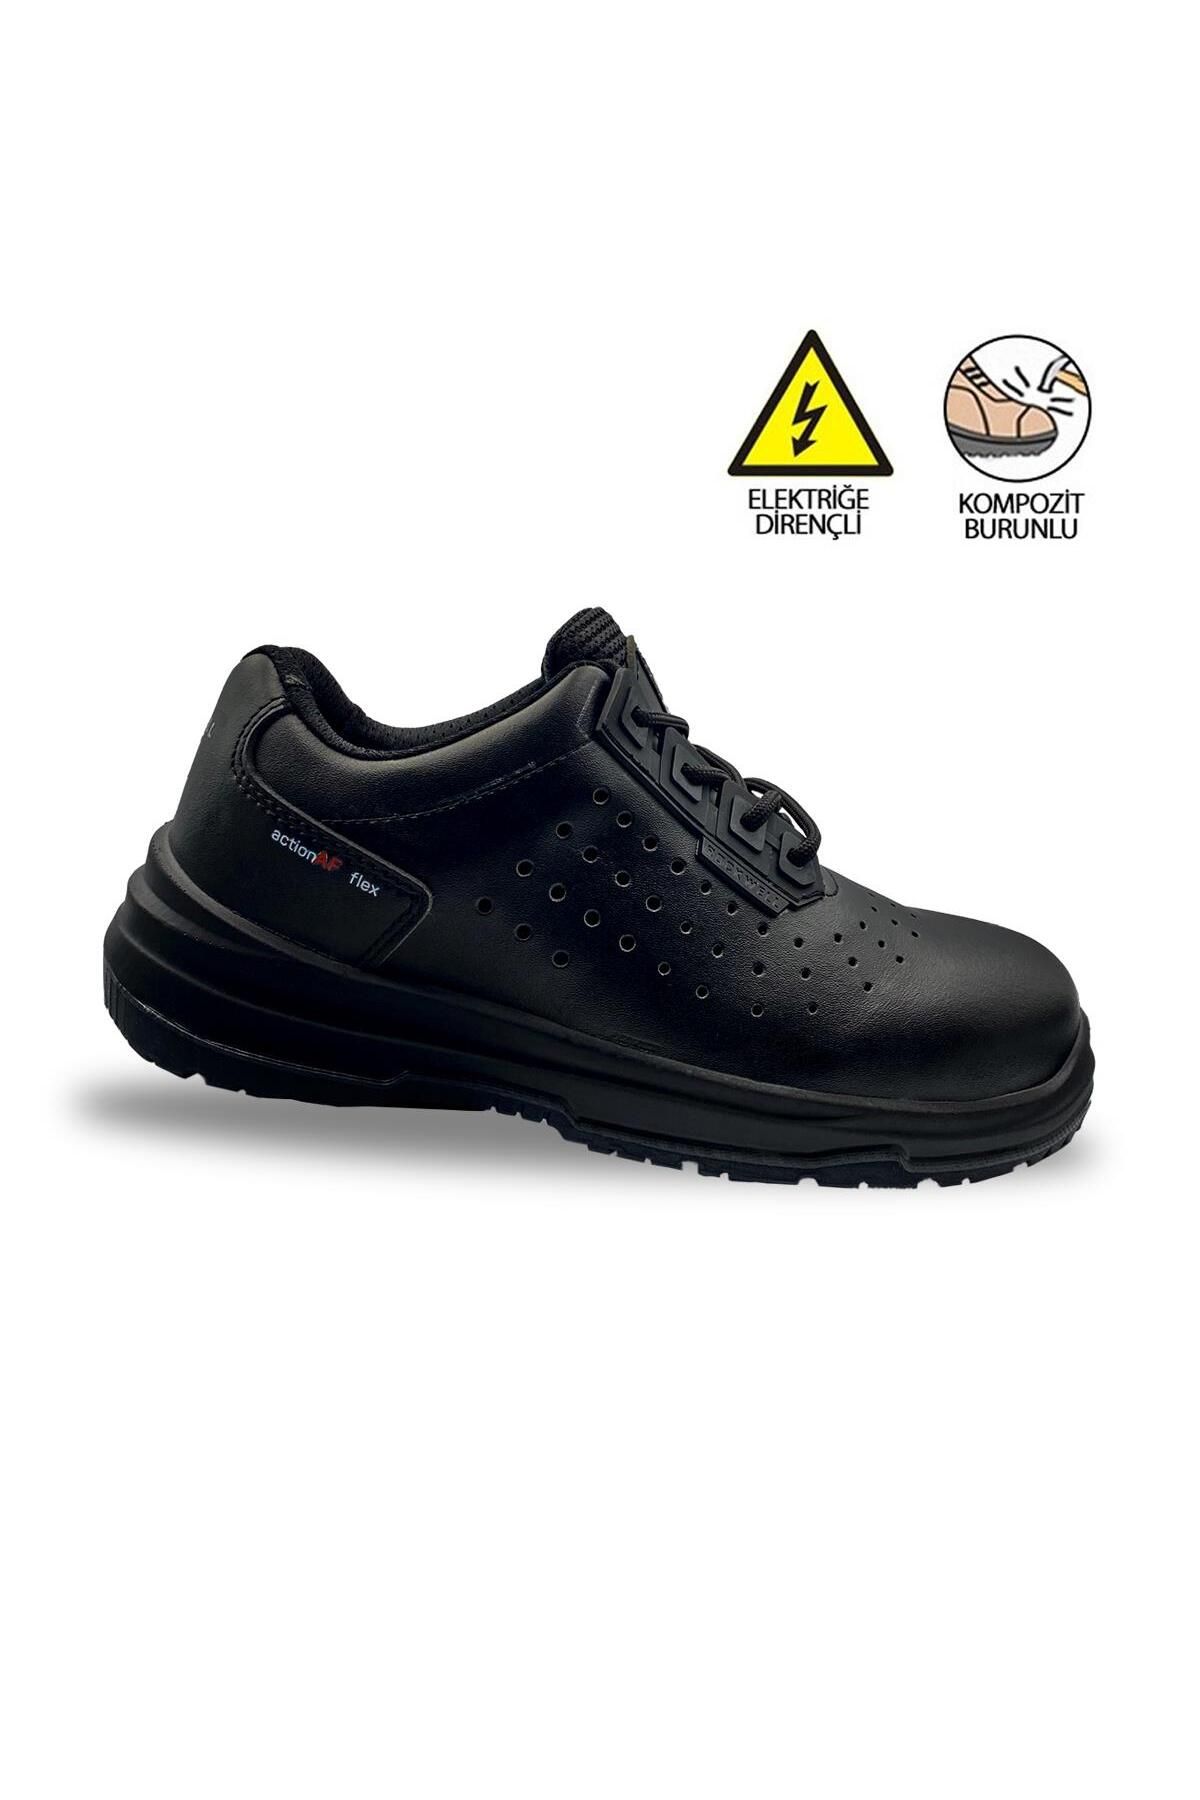 Rockwel L Siyah Deri S1p Kompozit Burun Deri Elektrikçi Ayakkabısı